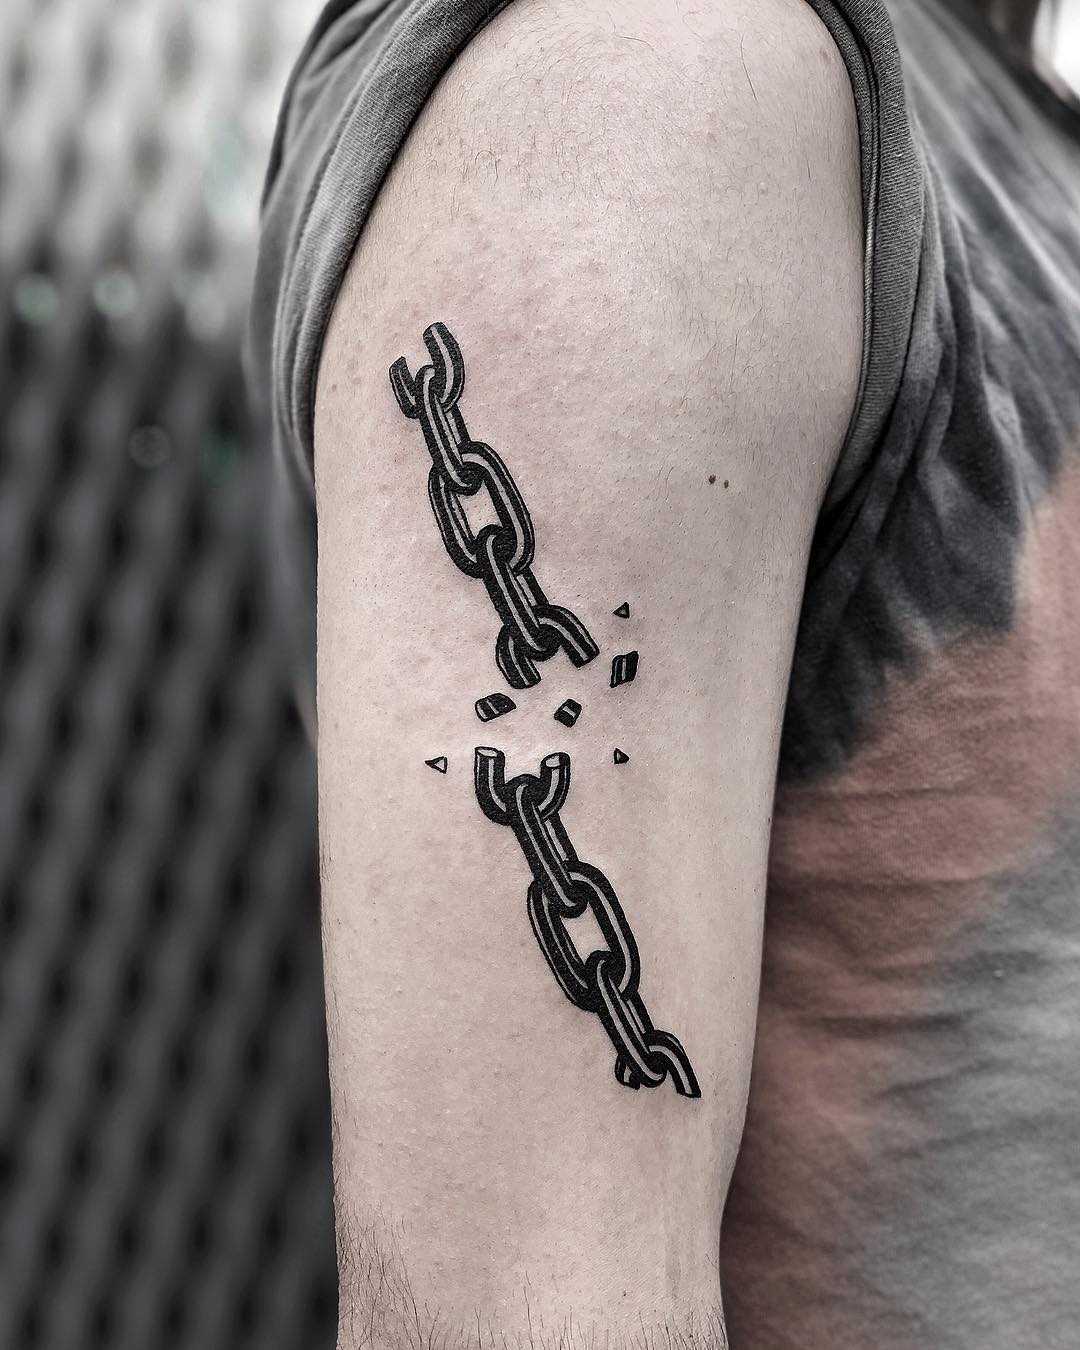 Broken chain tattoo by Loz McLean